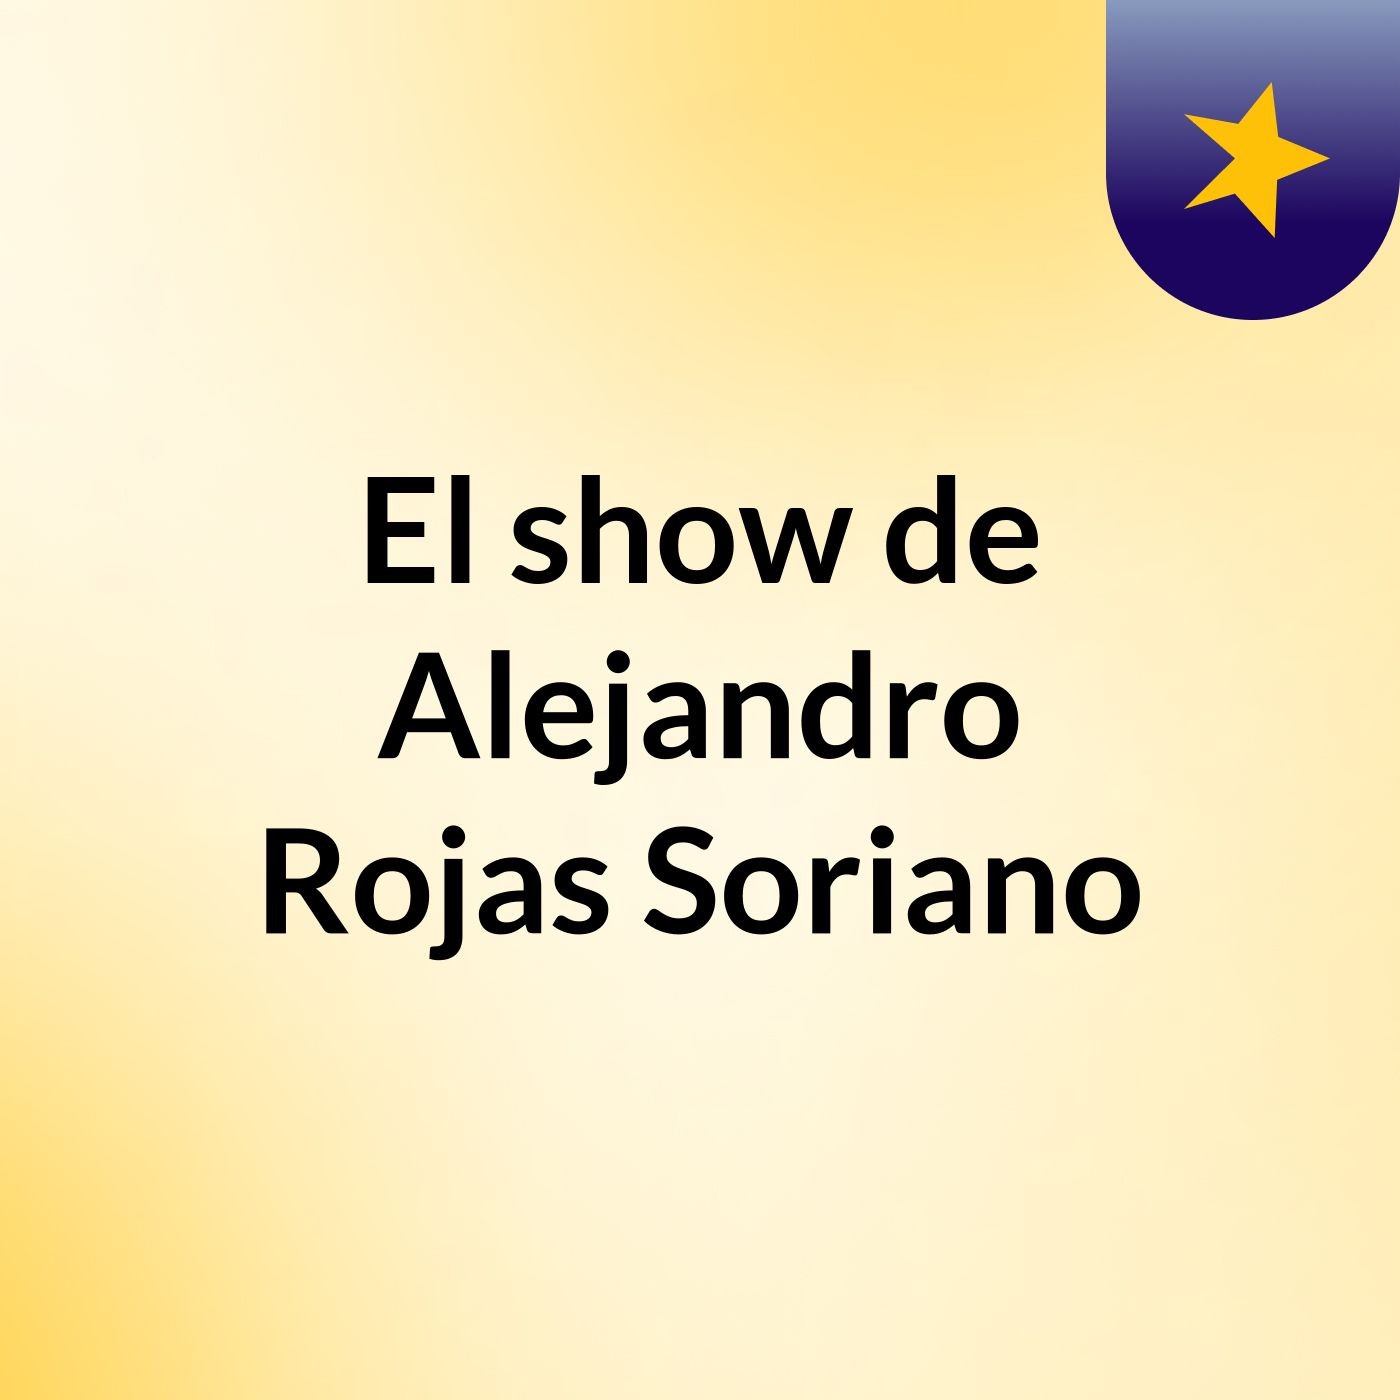 El show de Alejandro Rojas Soriano